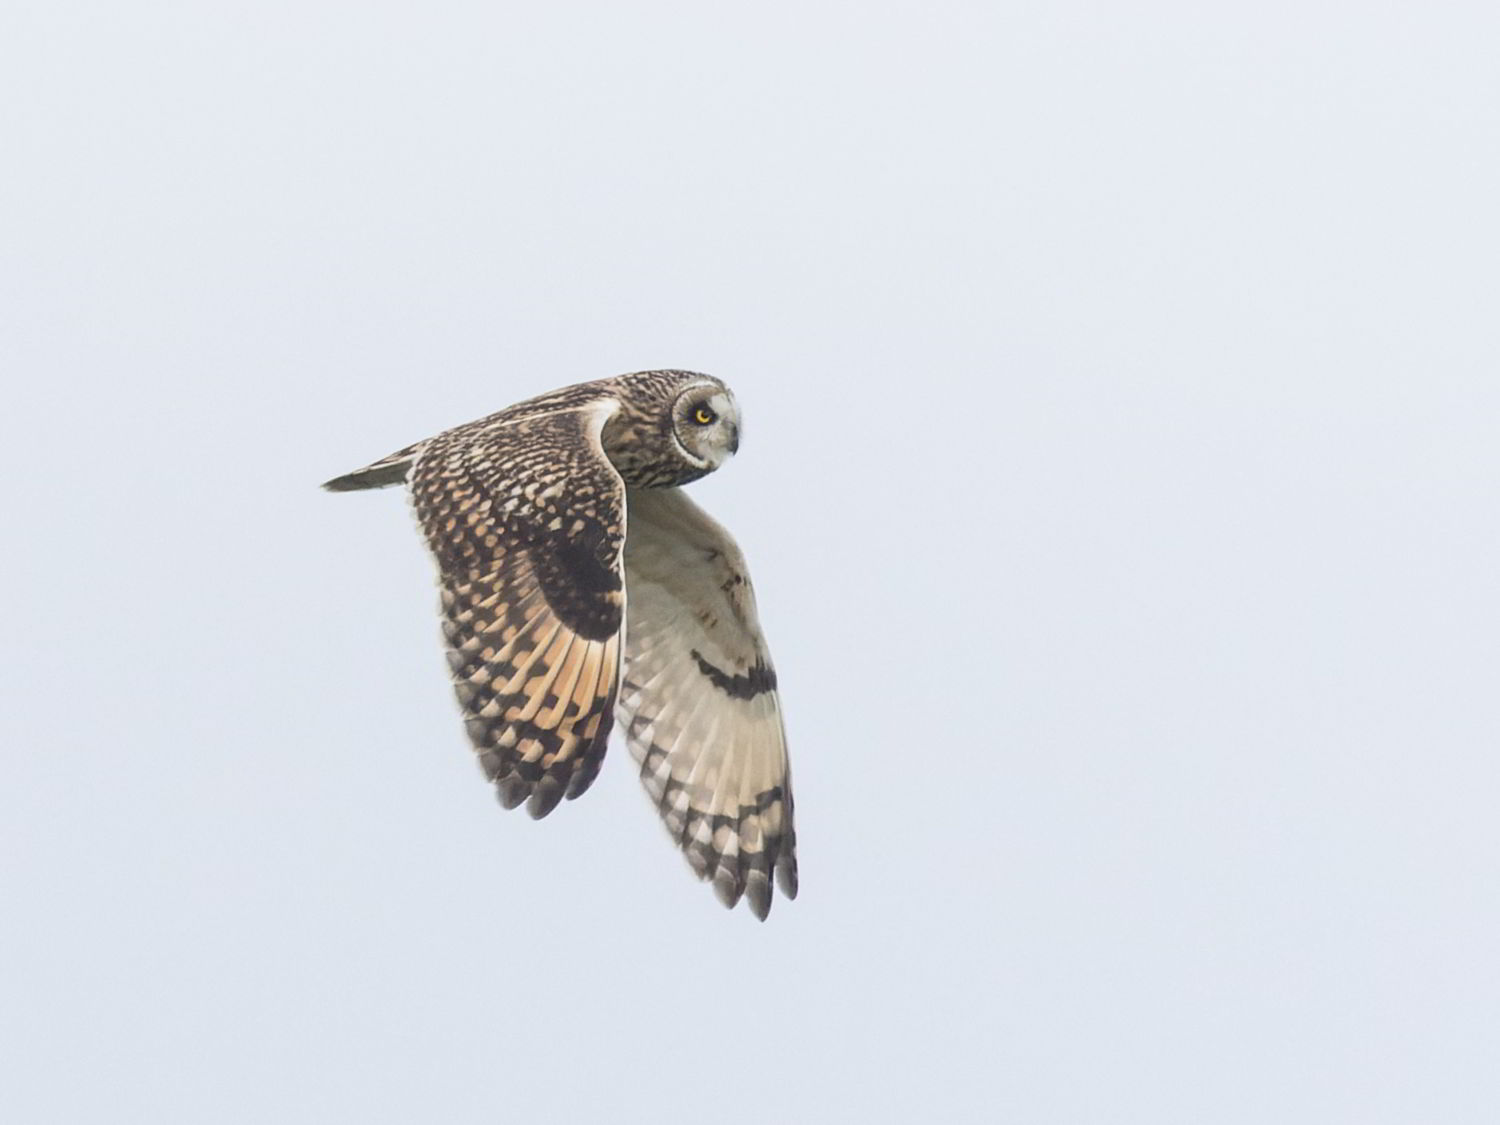 Short-eared Owl flying in pale sky